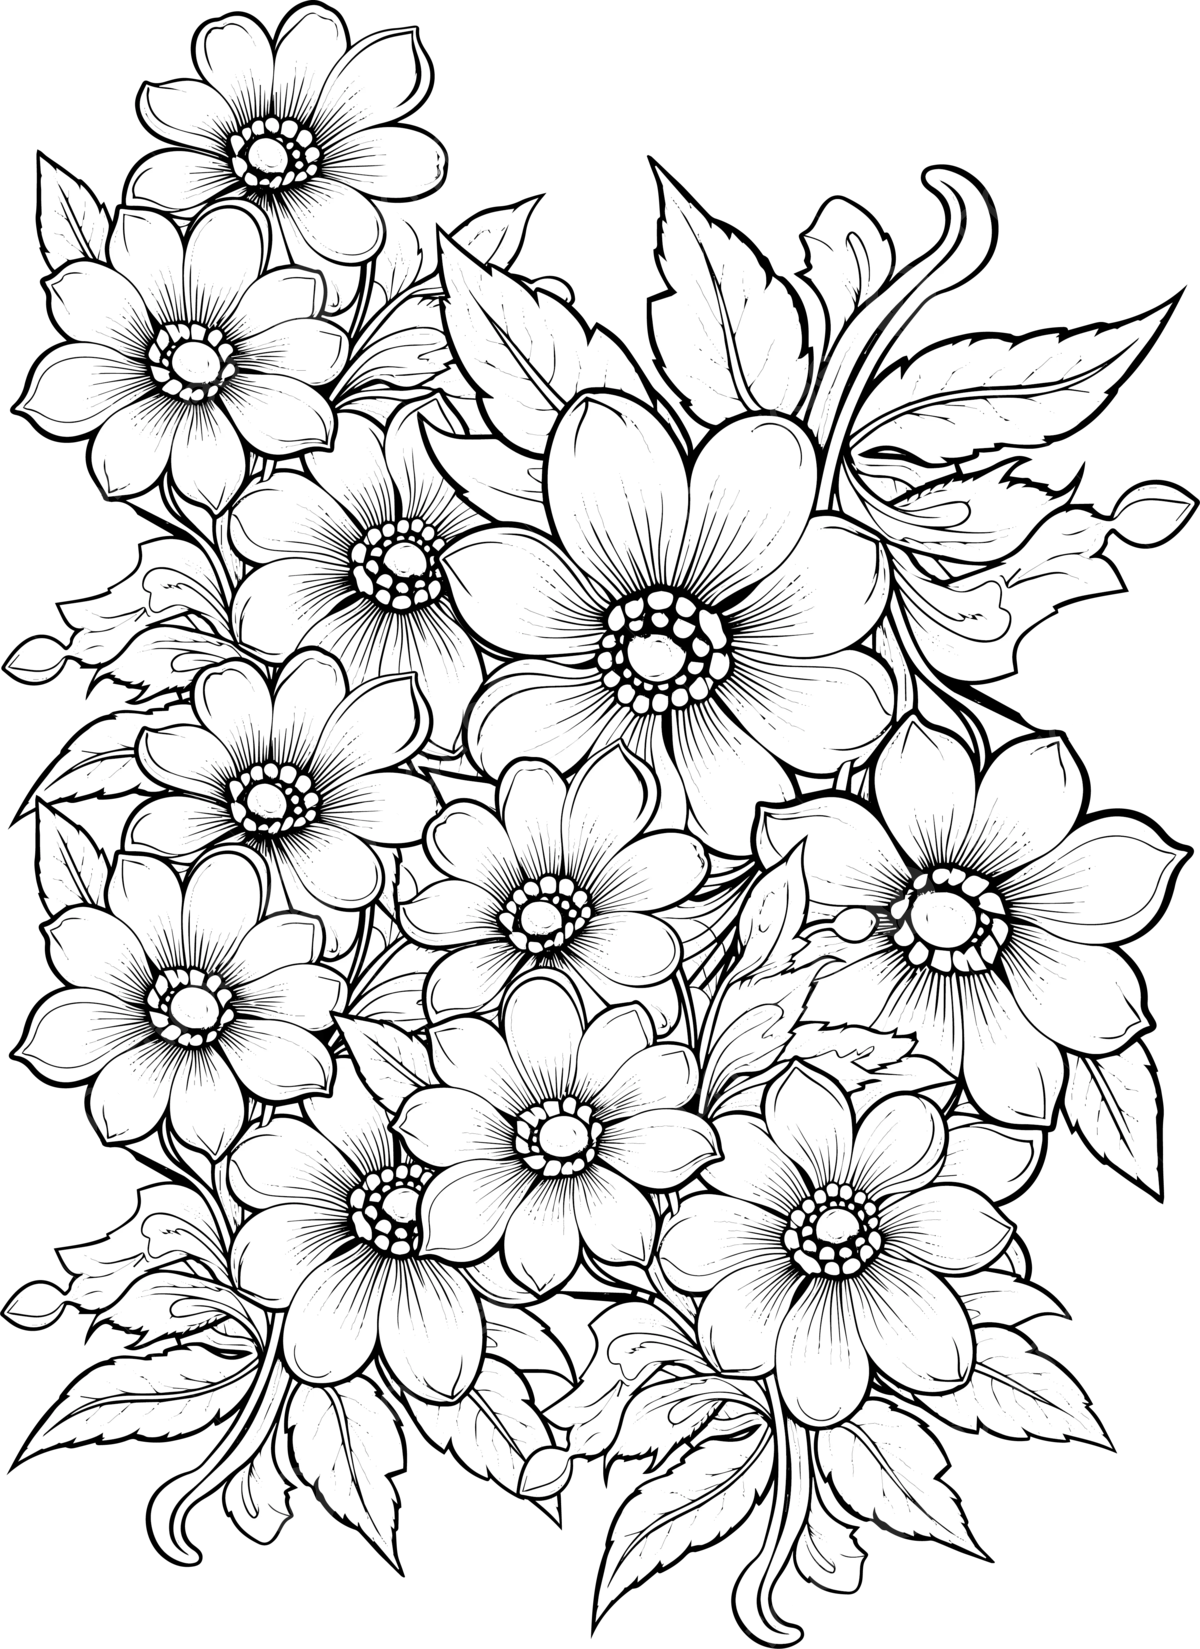 Dibujo de flor niãos y adultos pãgina para colorear primavera verano doodle elementos mandala patrãn con